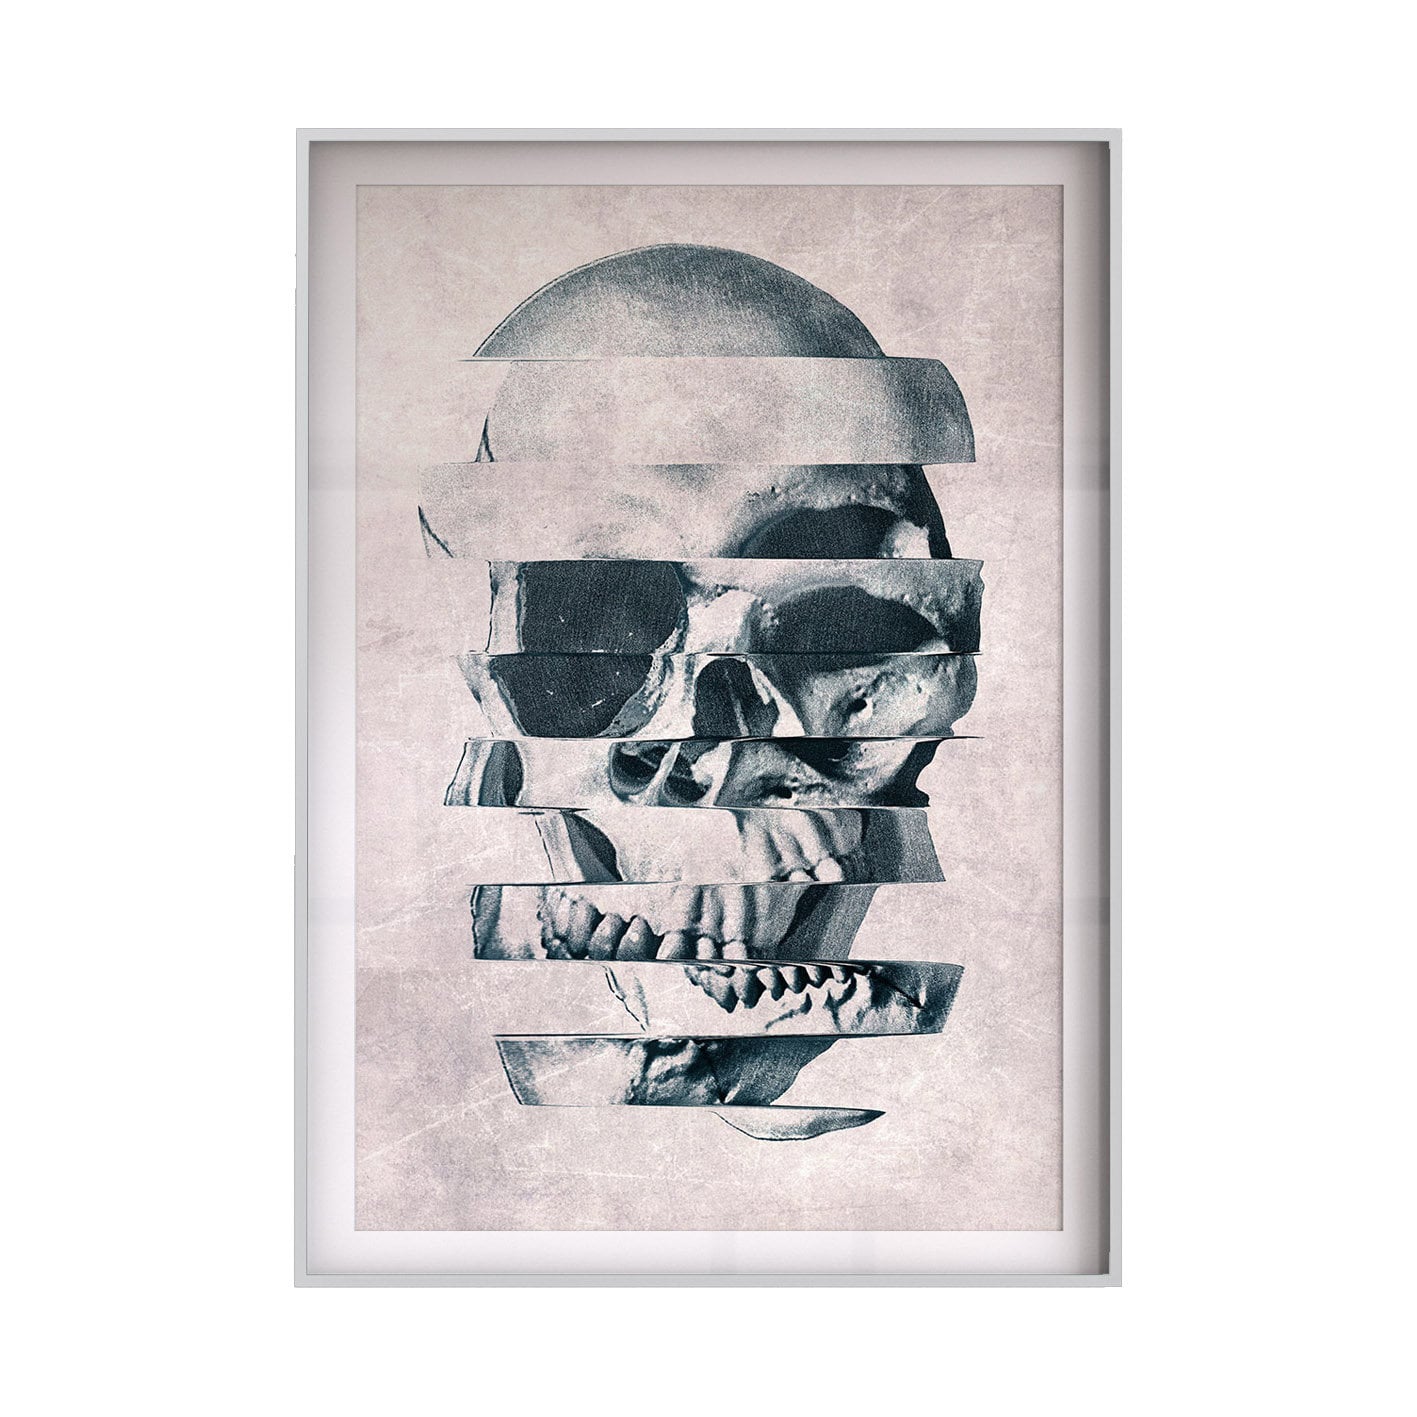 Black And White Skull Poster Set, Flower Skull Art Print Set Of 2, Botanical Sugar Skull Home Decor Wall Art Gift, Gothic Skull Wall Decor